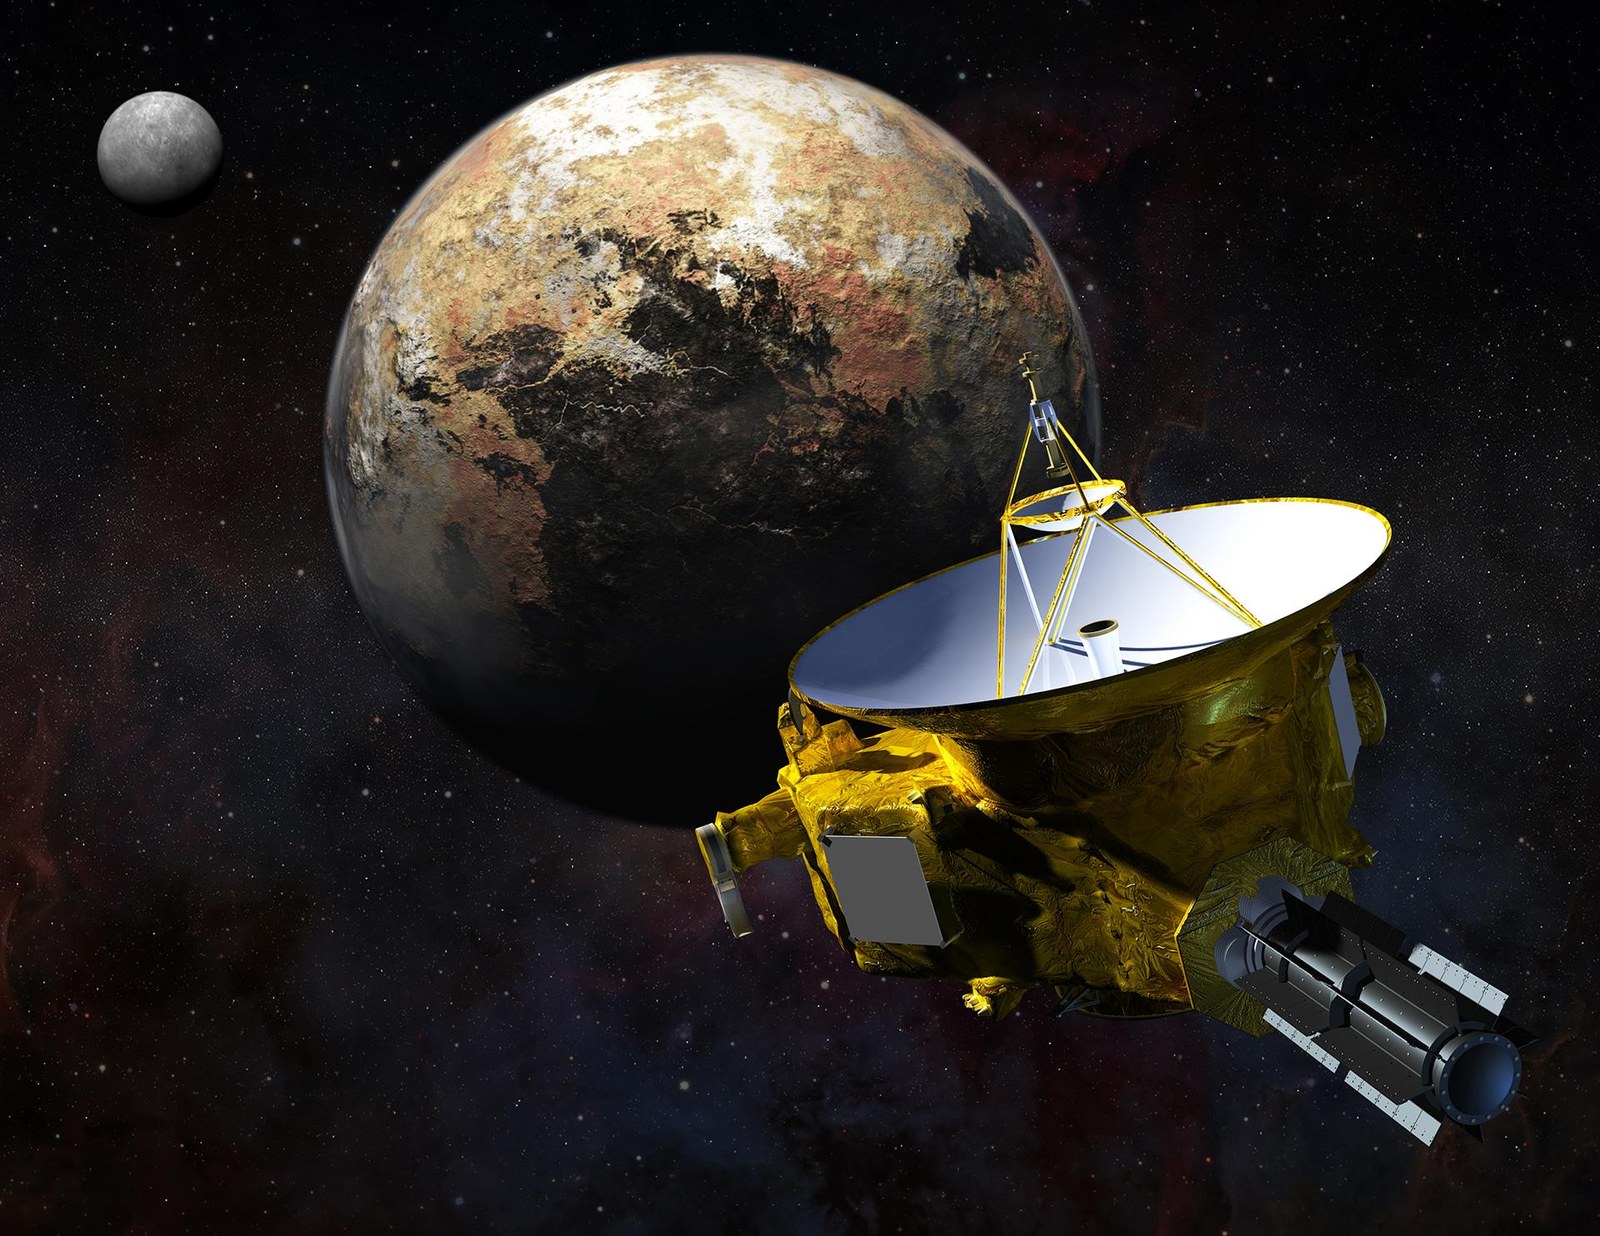 Vorbeiflug von New Horizons 2015 an Pluto und Charon